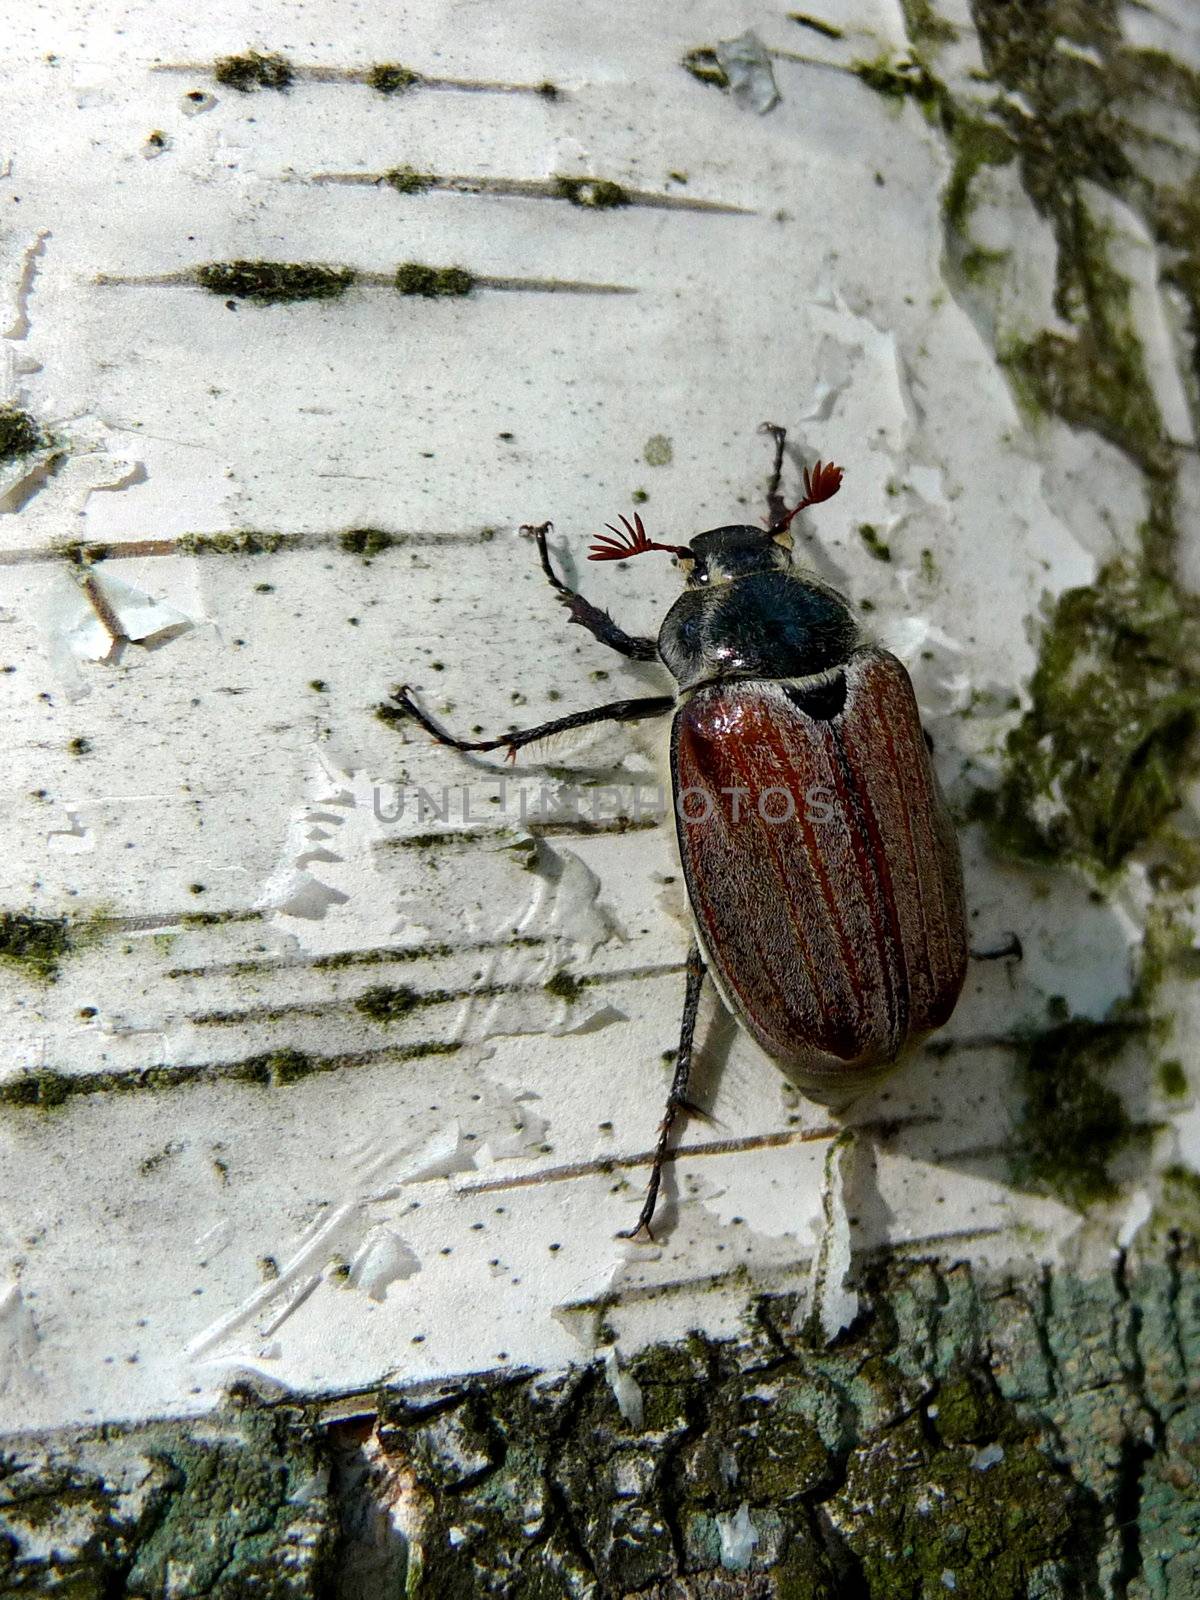 Maybug on the white birch, spring shot